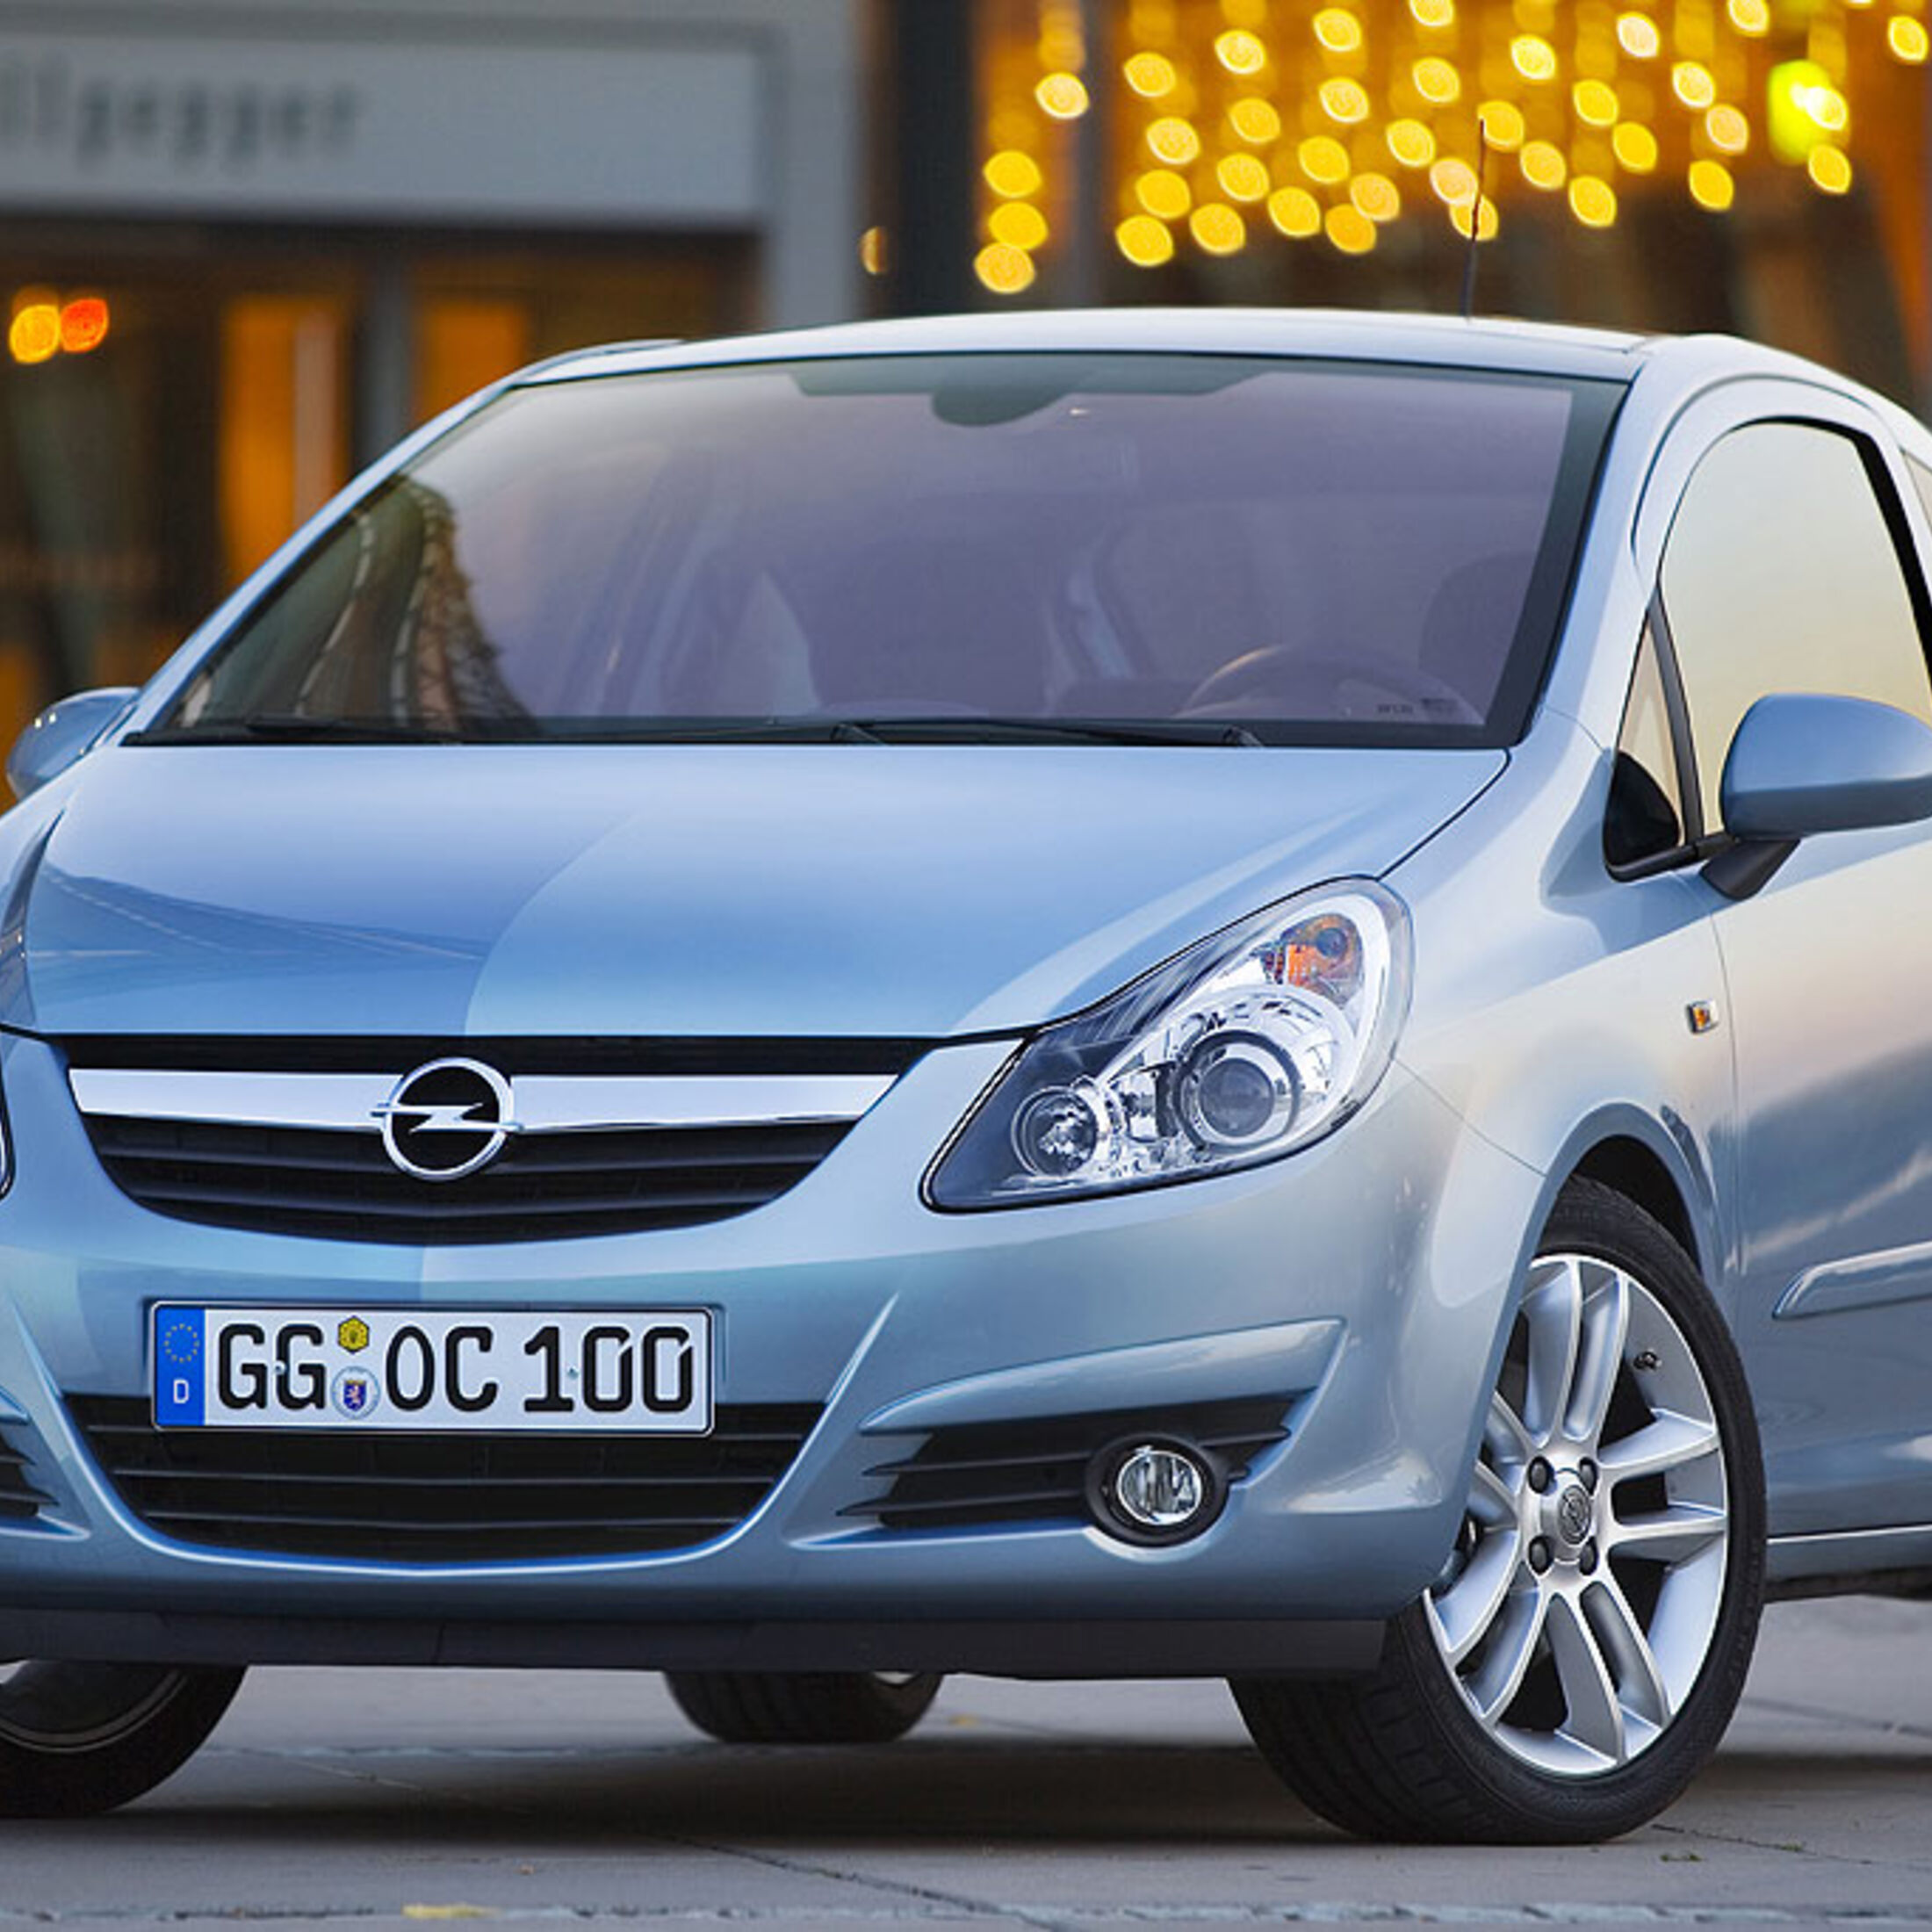 https://imgr1.auto-motor-und-sport.de/Opel-Corsa-D-jsonLd1x1-ede2d5ec-119840.jpeg